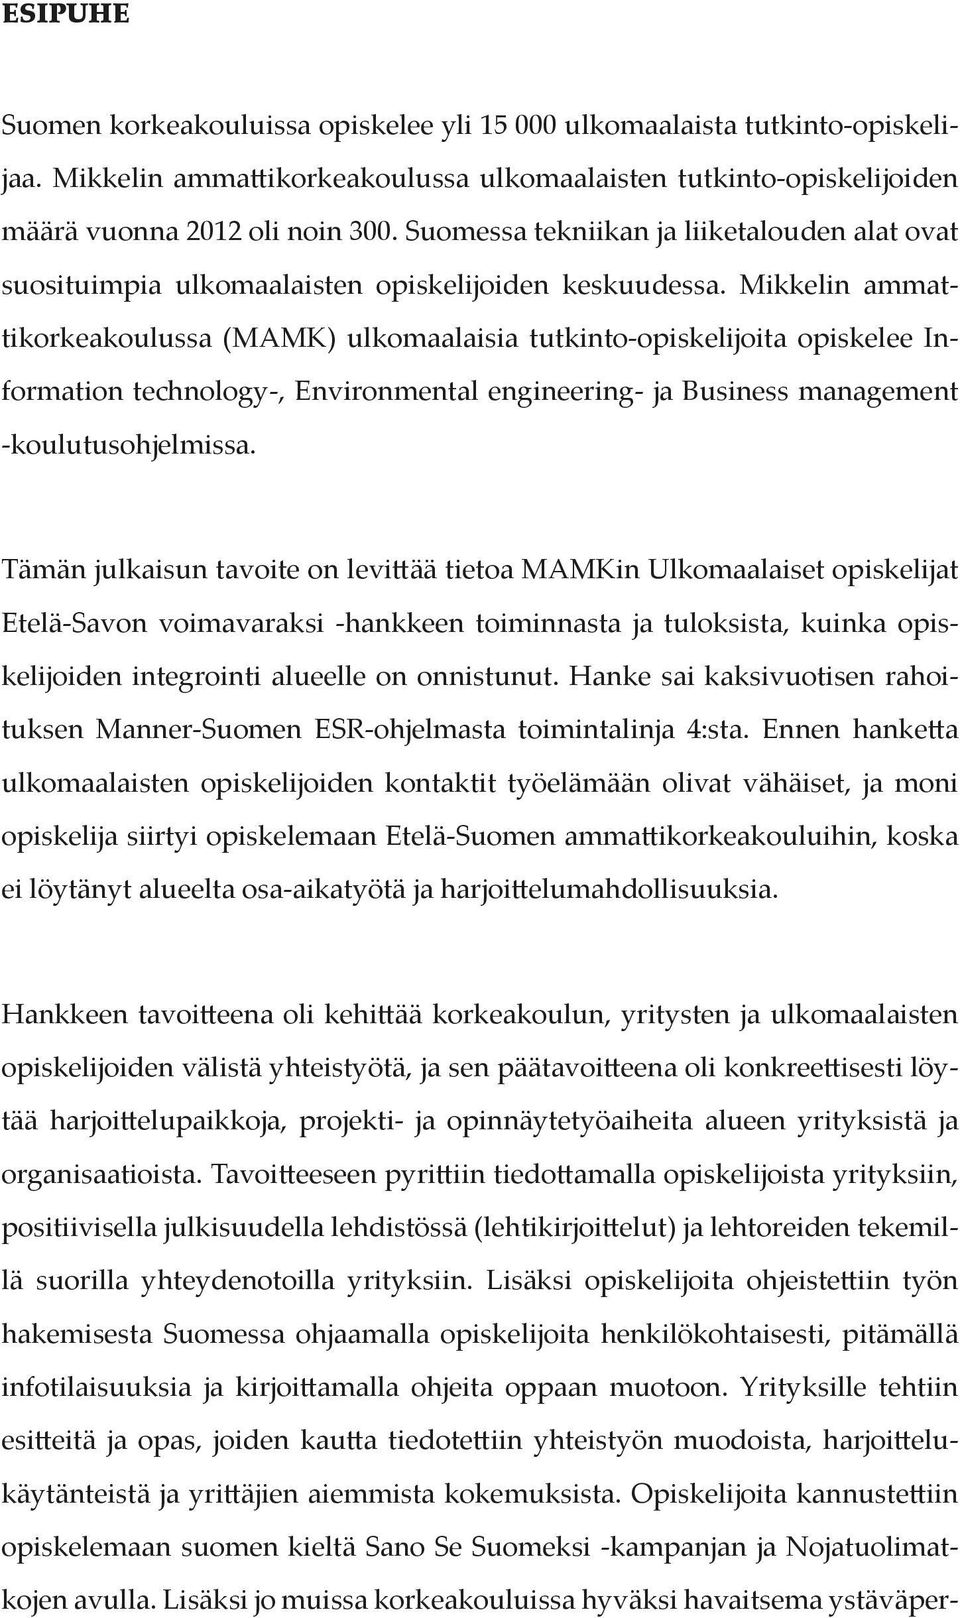 Mikkelin ammattikorkeakoulussa (MAMK) ulkomaalaisia tutkinto-opiskelijoita opiskelee Information technology-, Environmental engineering- ja Business management -koulutusohjelmissa.